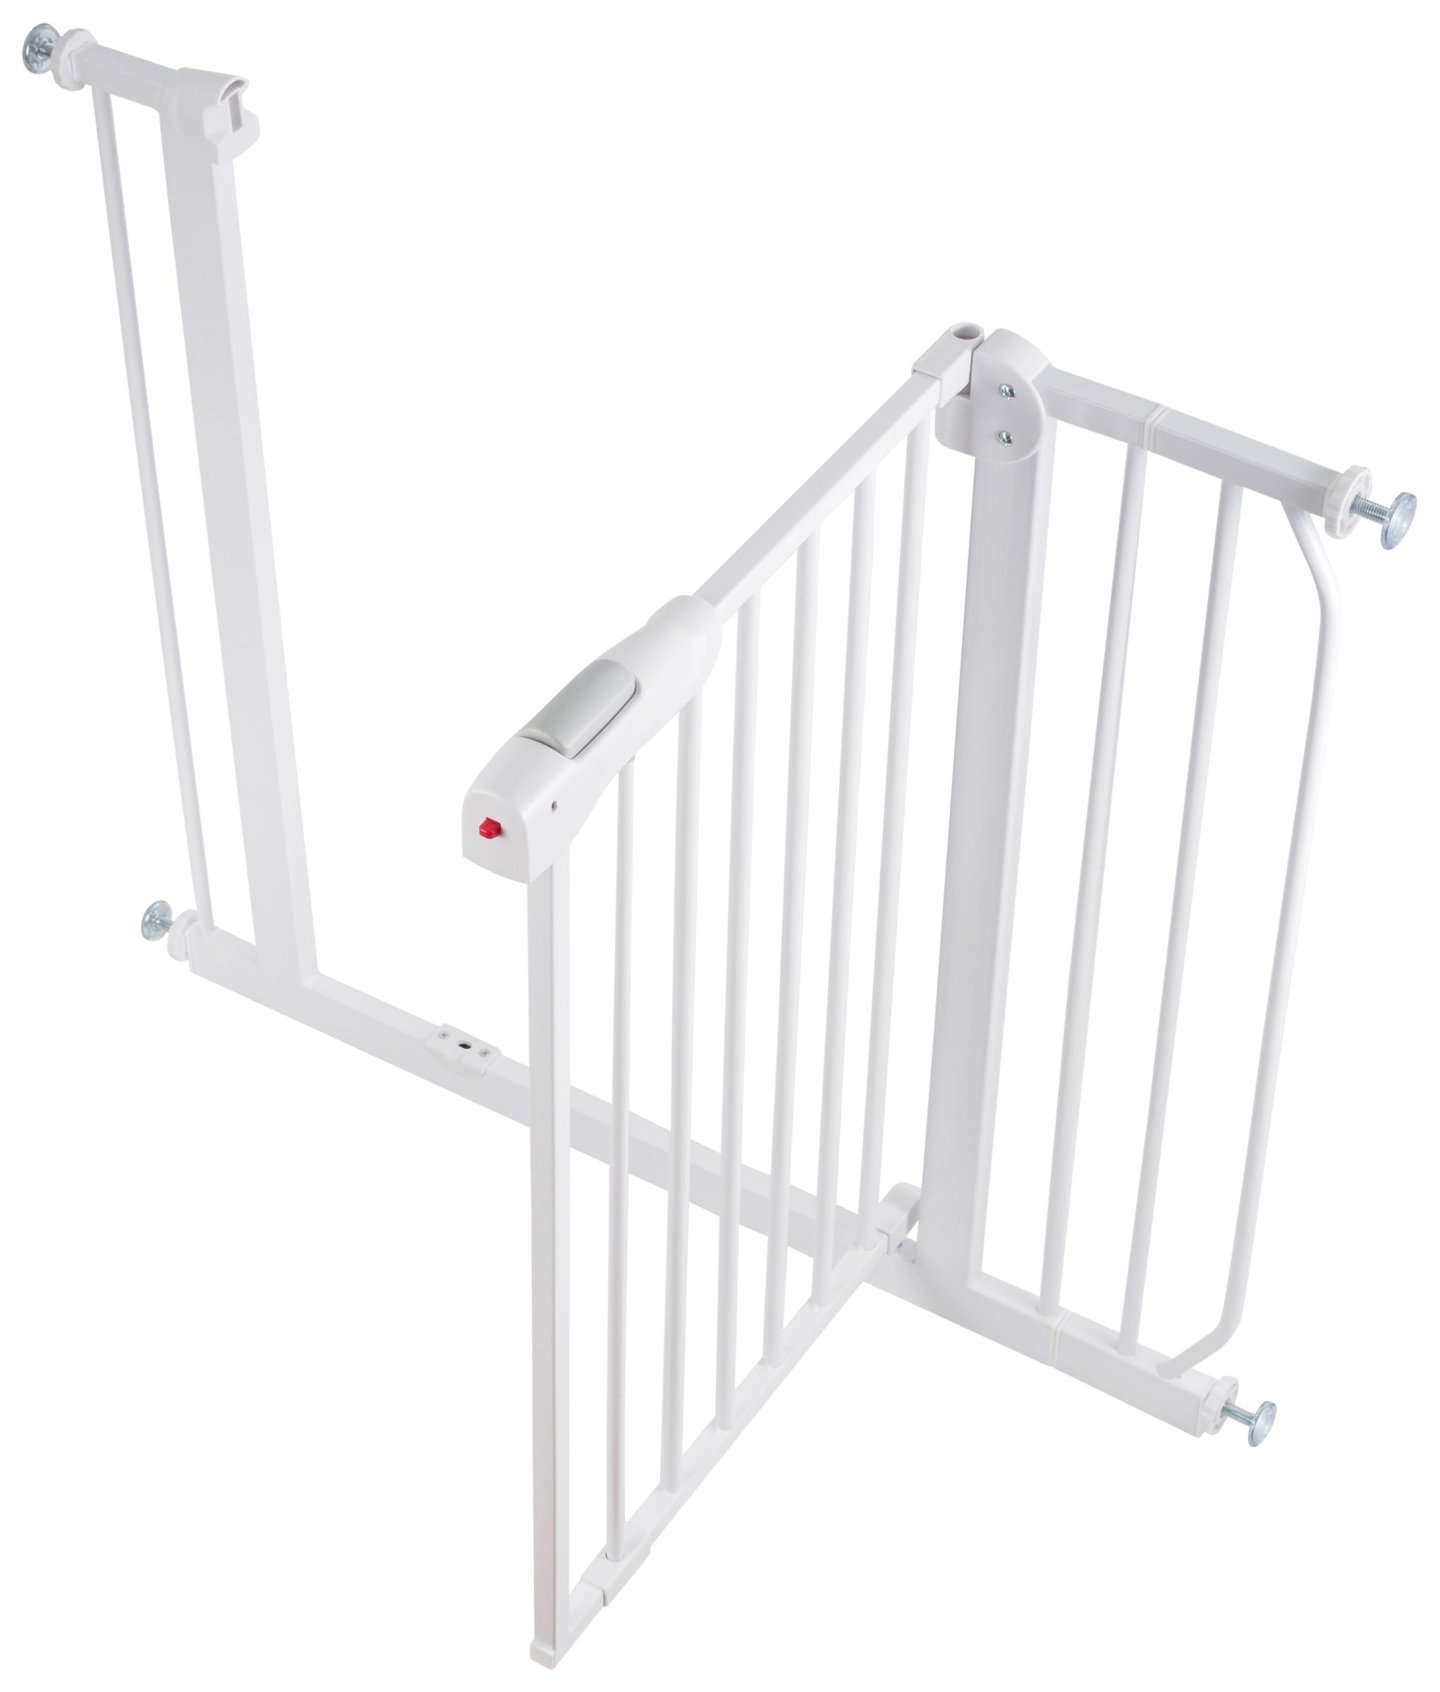 Bezpečnostní zábrana pro dveře a schody – ochranná bariéra – šířka 76...95cm